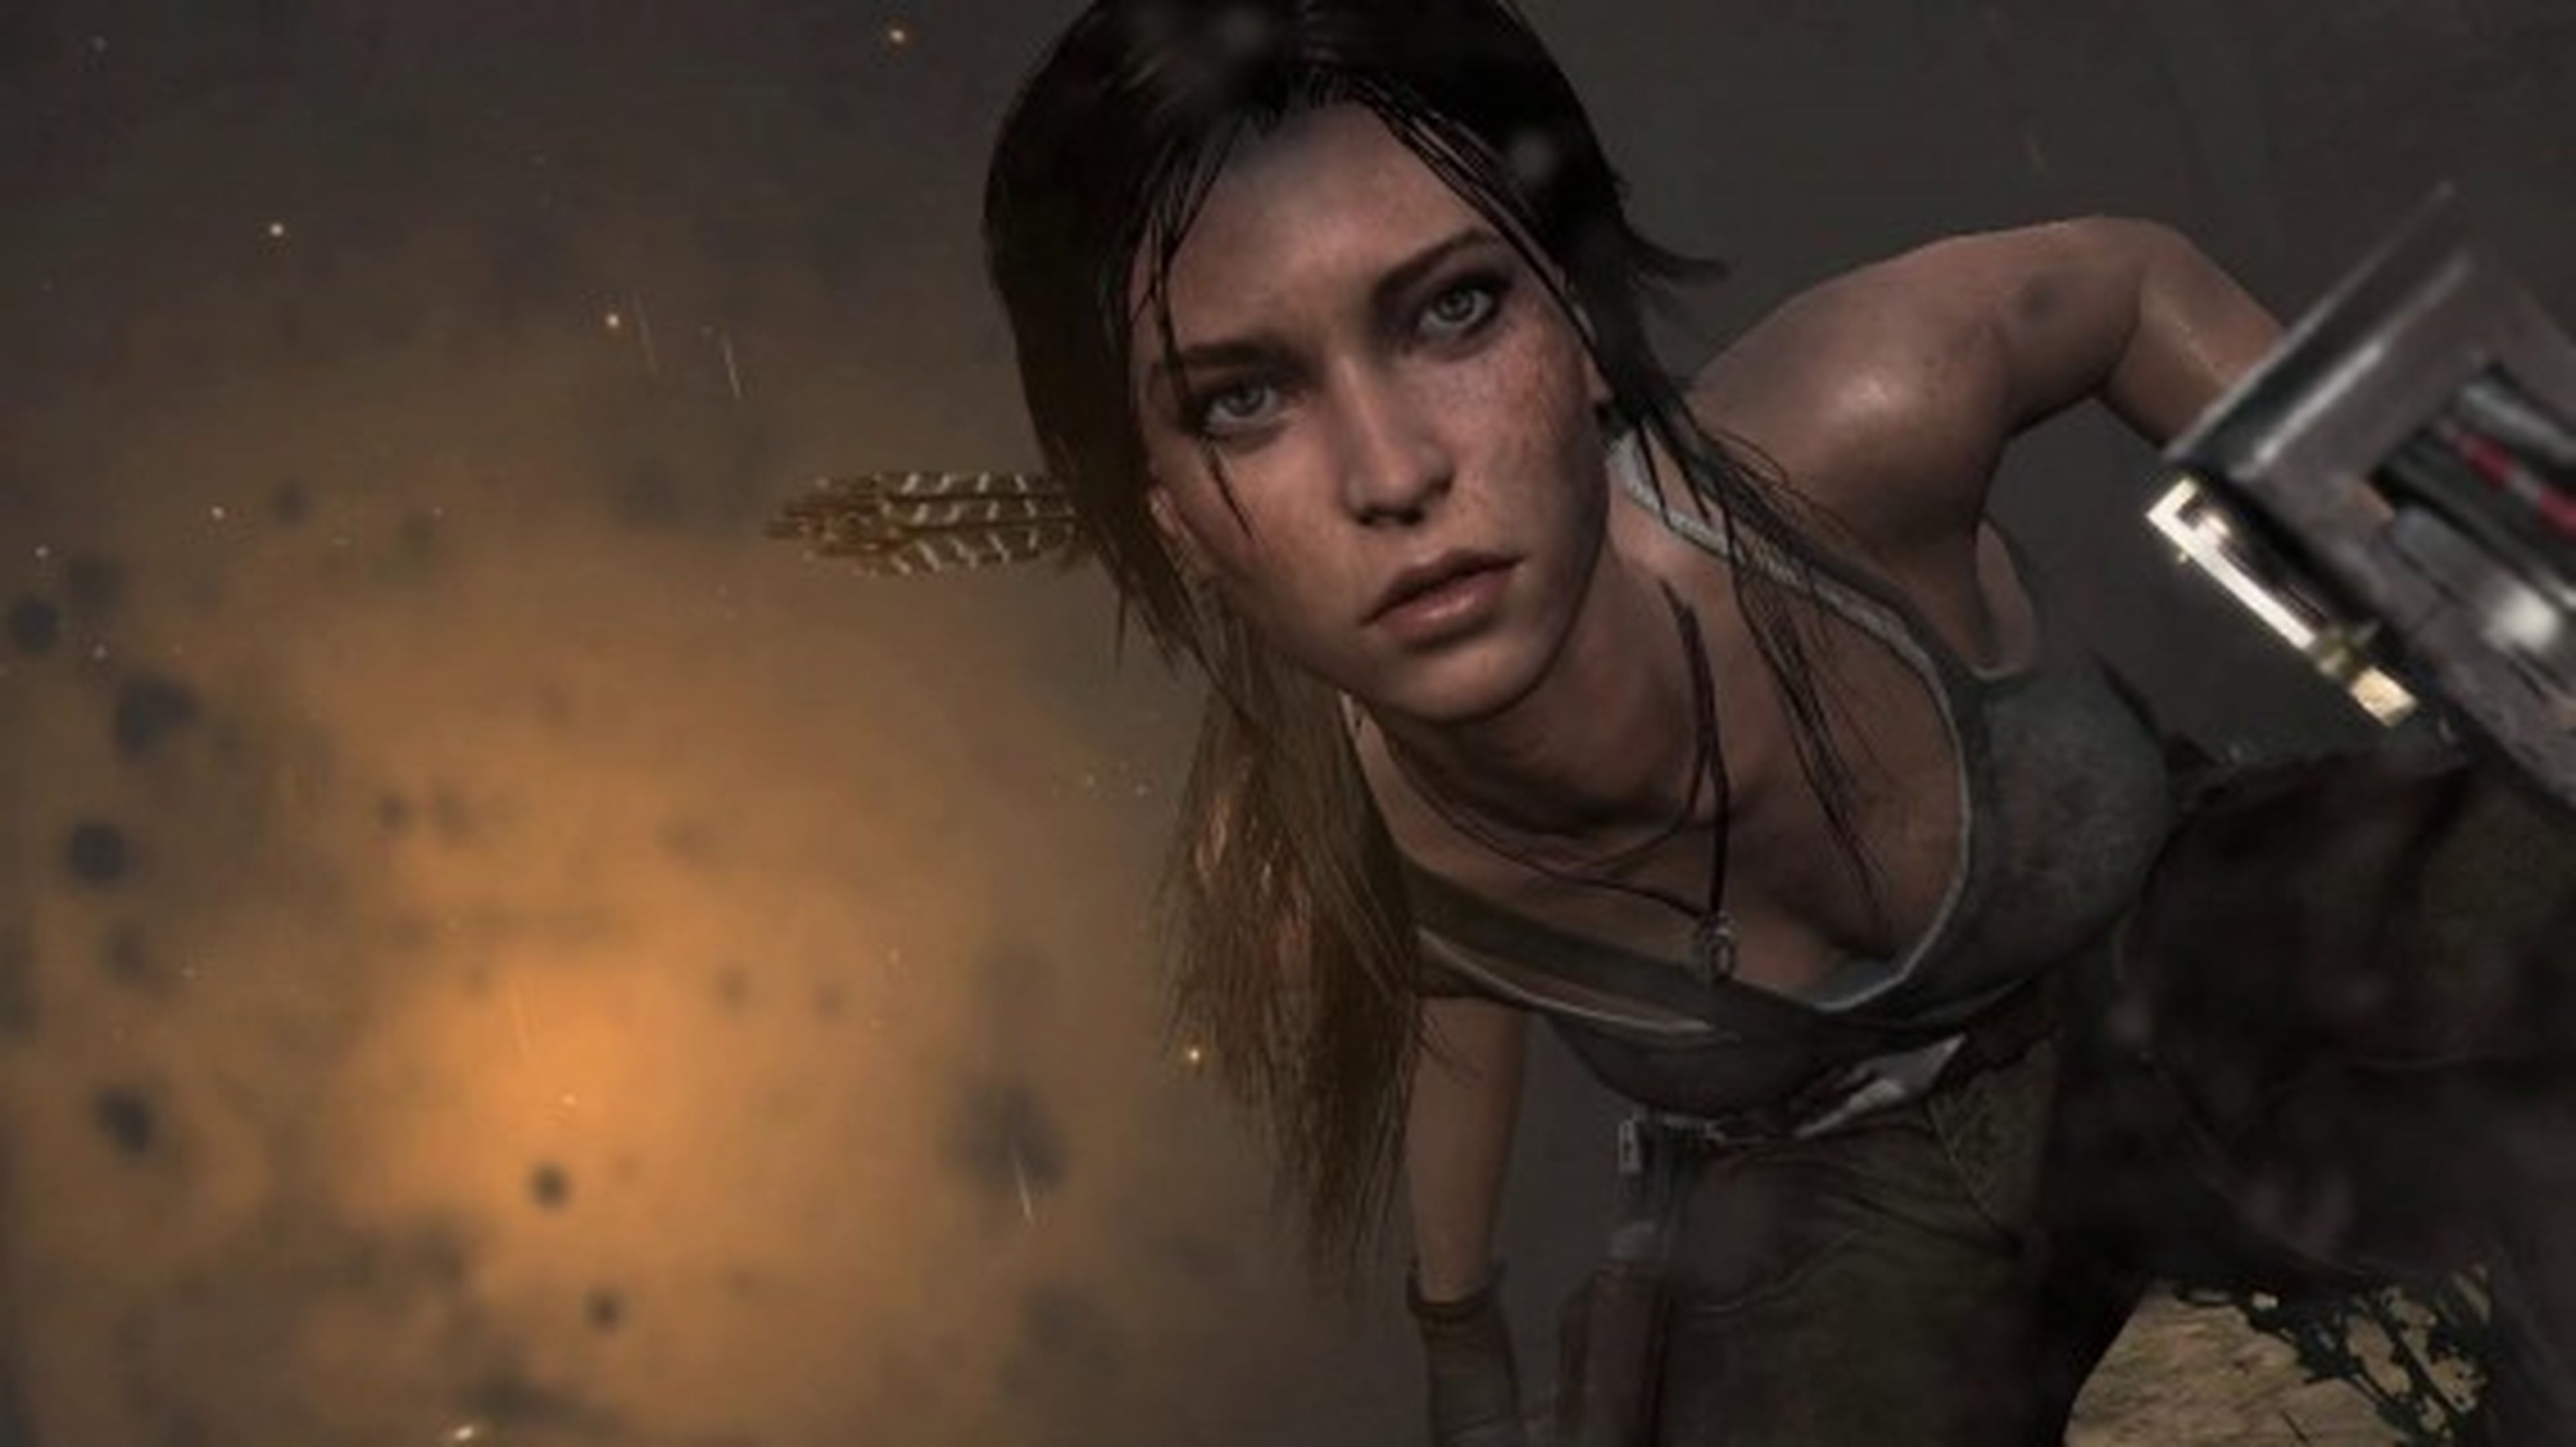 Tomb Raider Definitive Edition no saldrá en PC